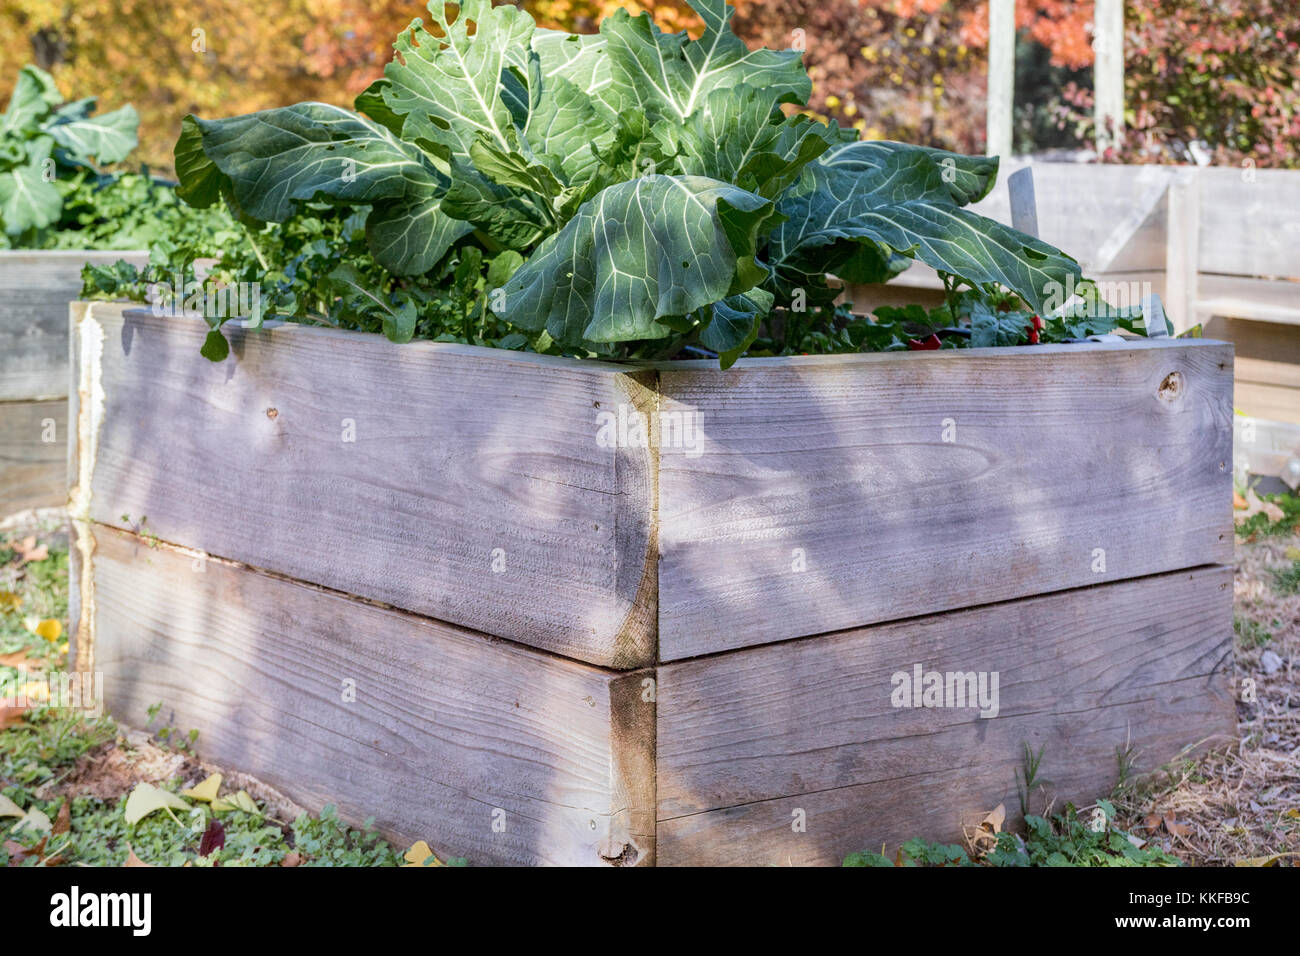 Accueil verte durable jardinières de légumes Banque D'Images